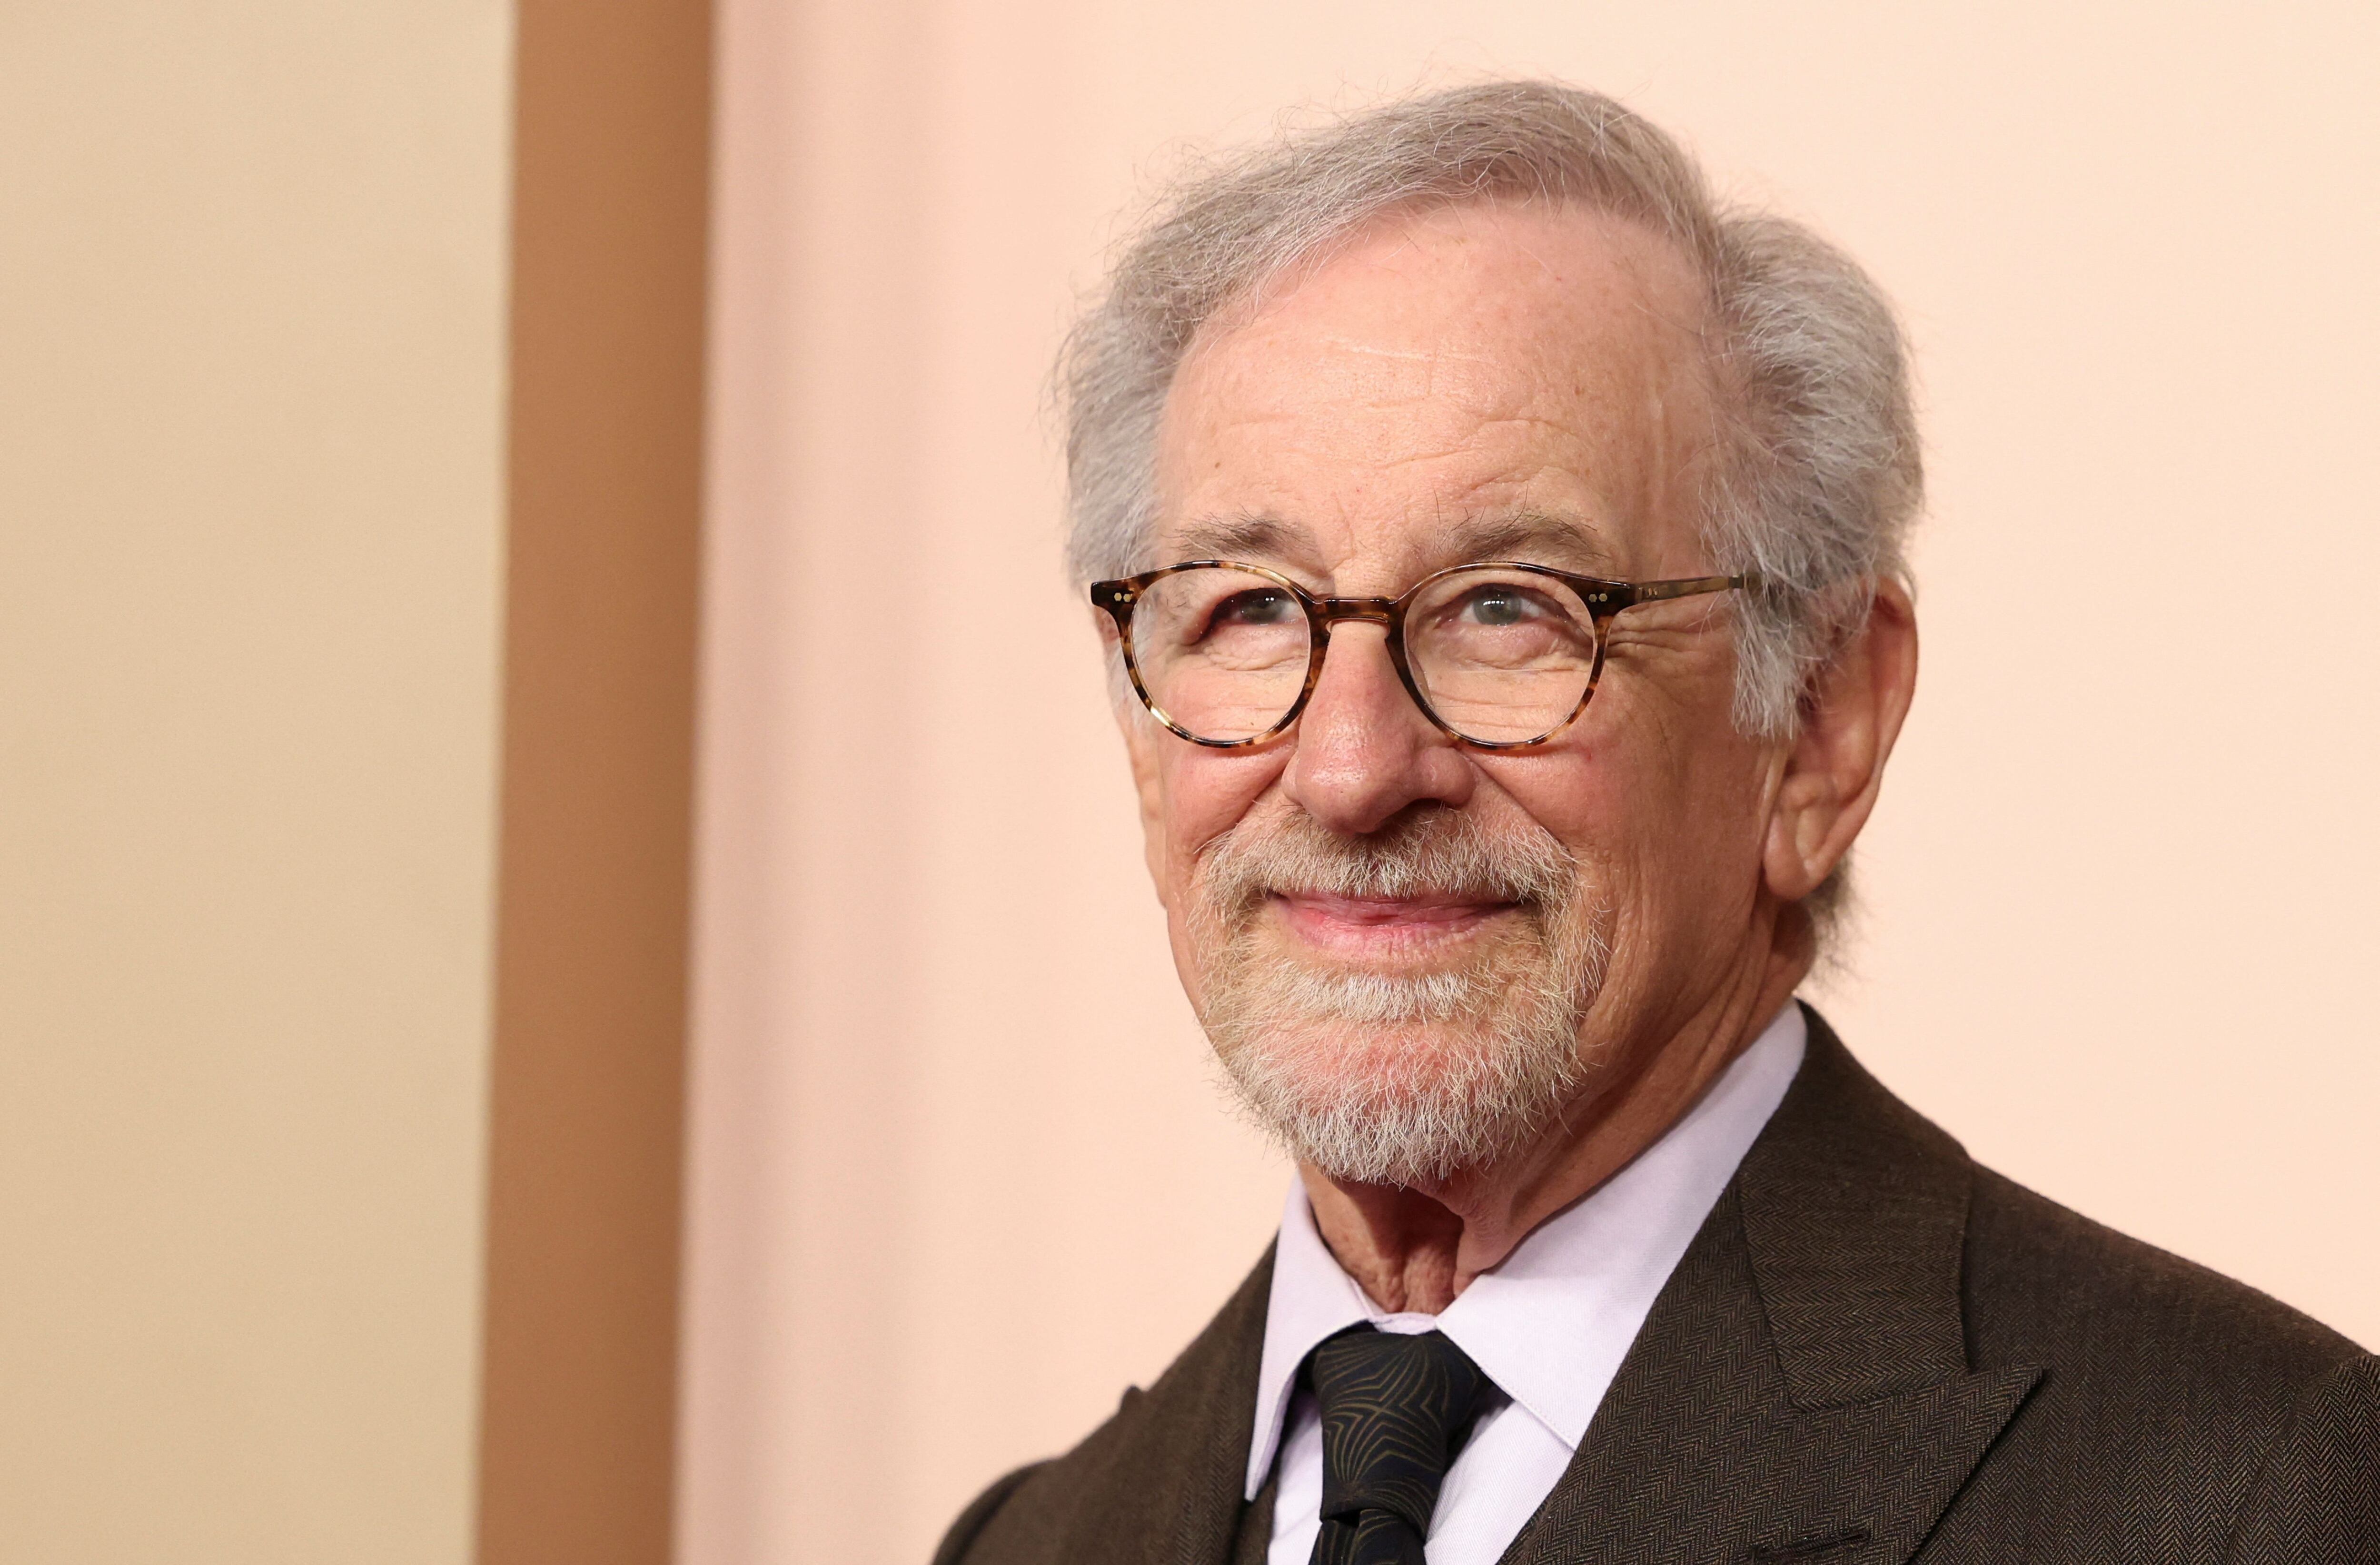 El director de cine, Steven Spielberg (REUTERS / Mario Anzuoni)